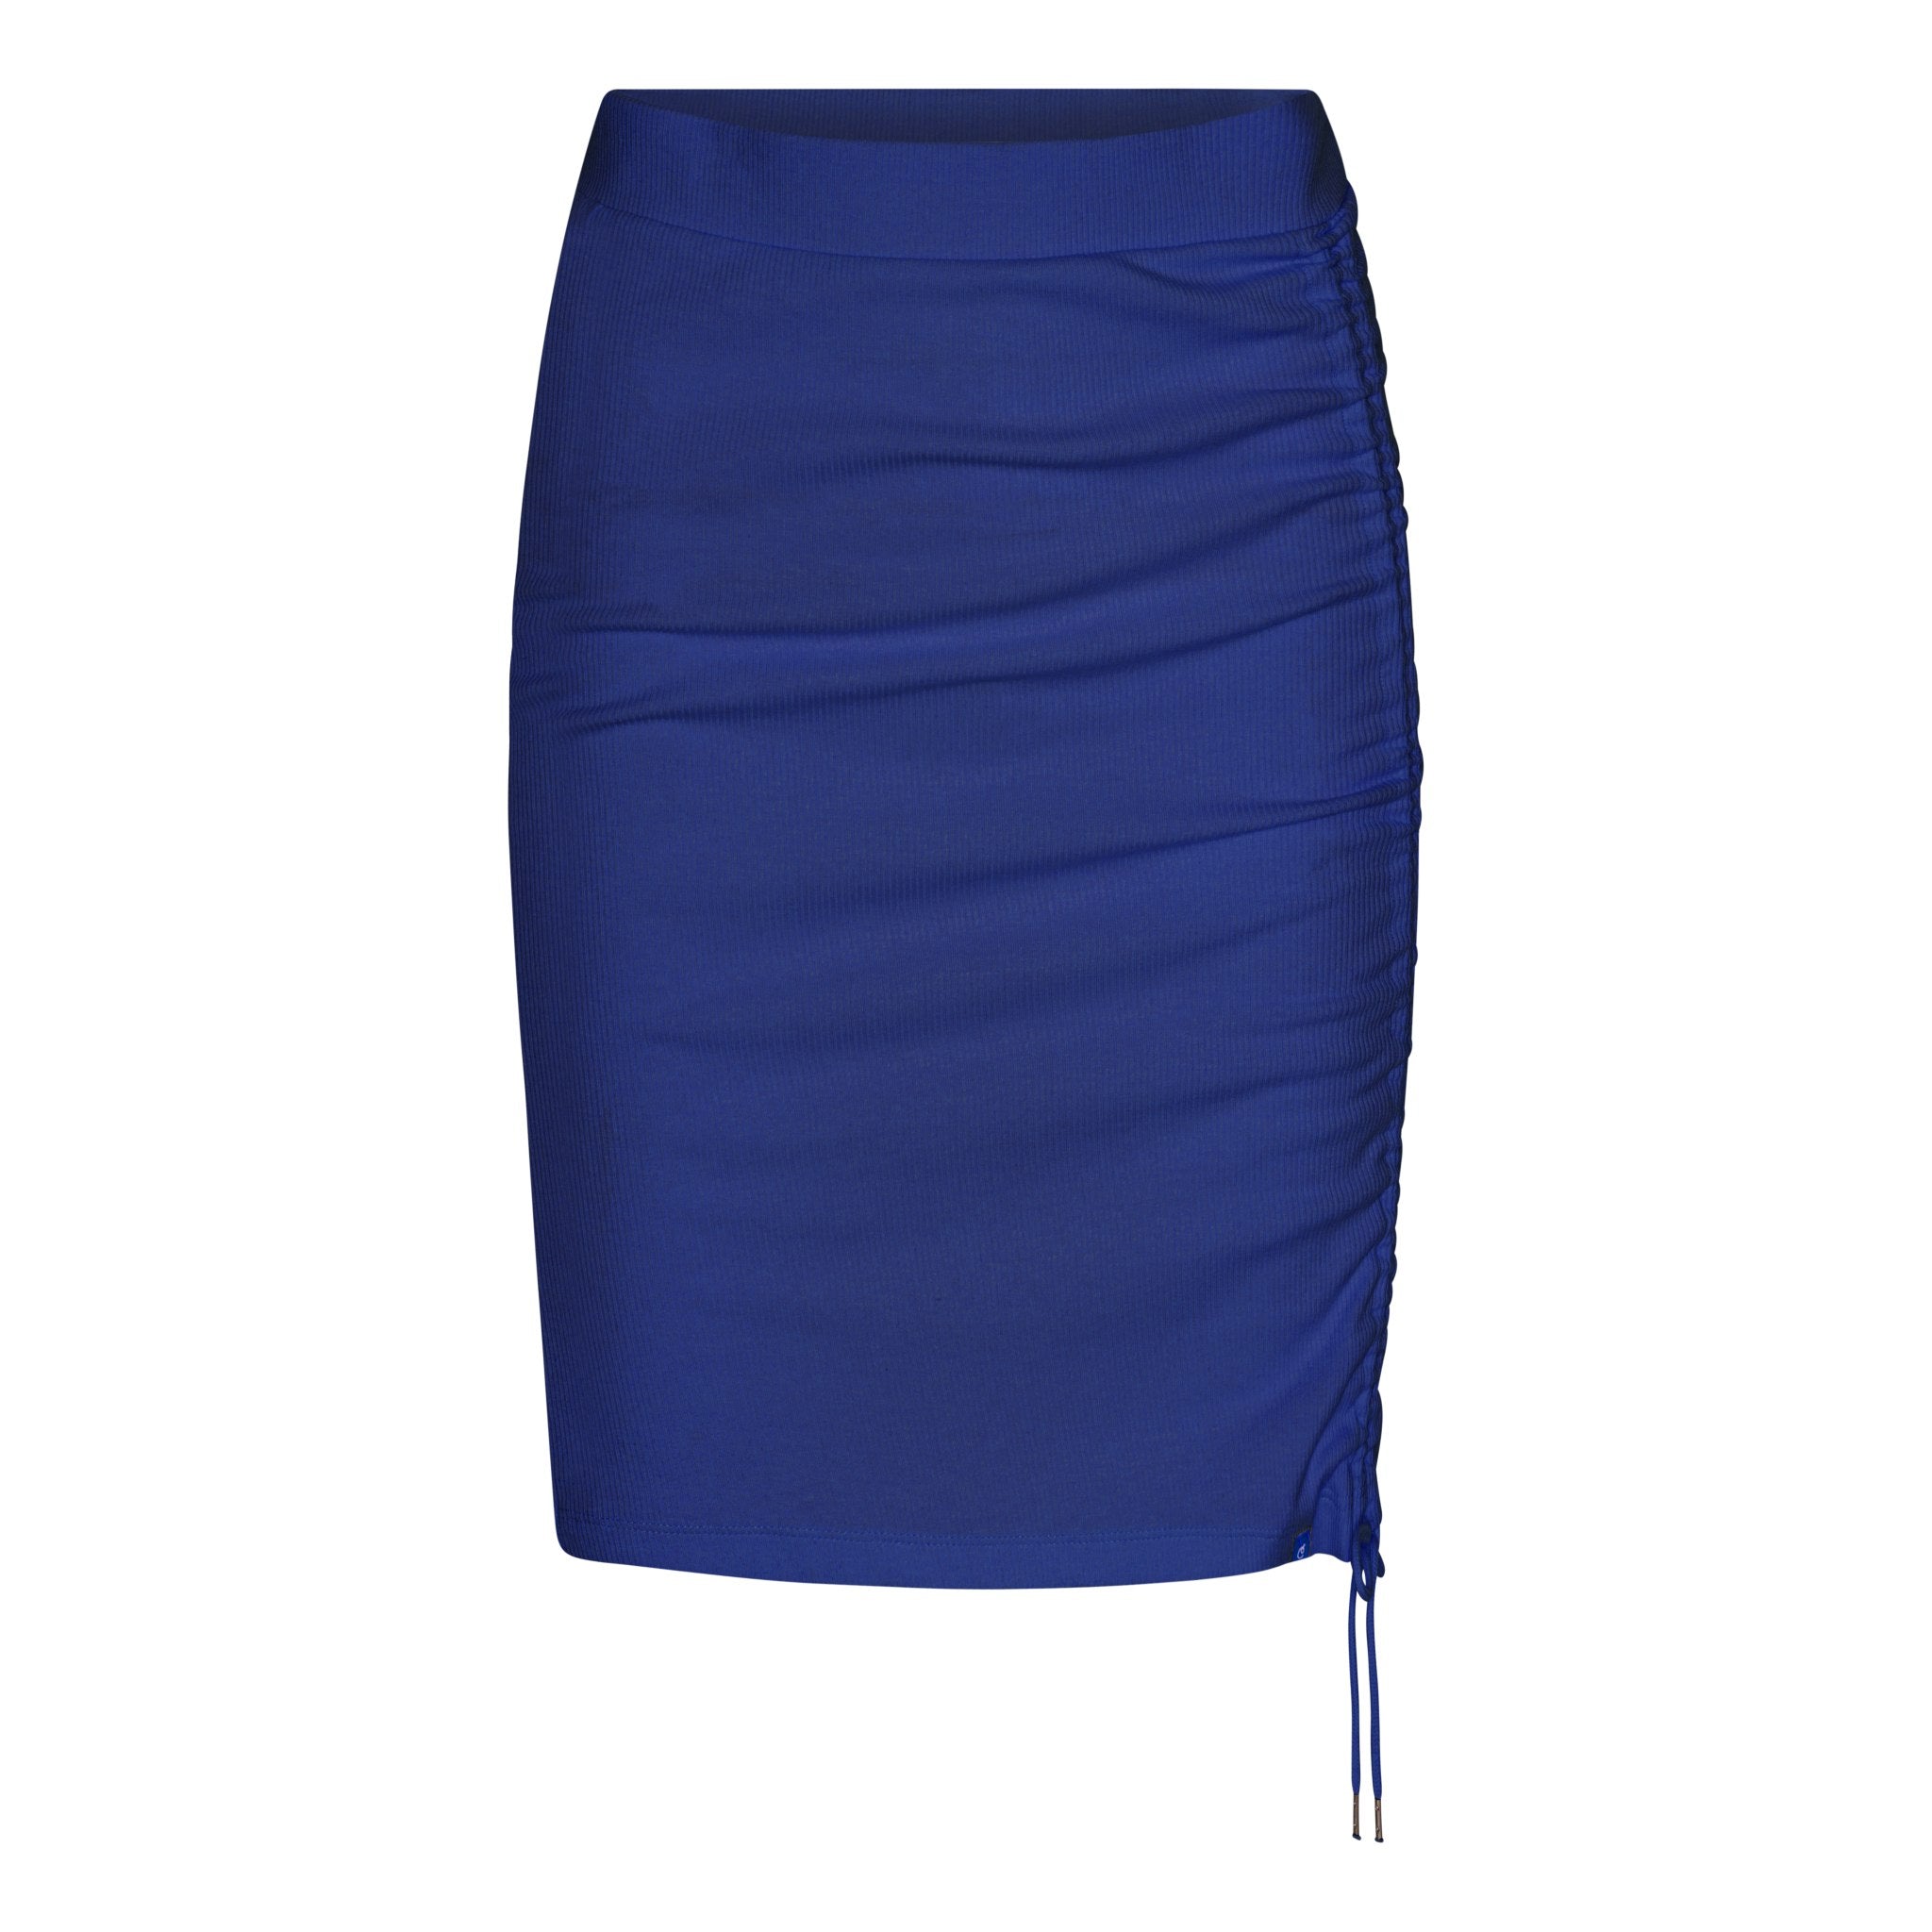 Crest ribbed adjustable OCN Weed® skirt - Cartel Blue